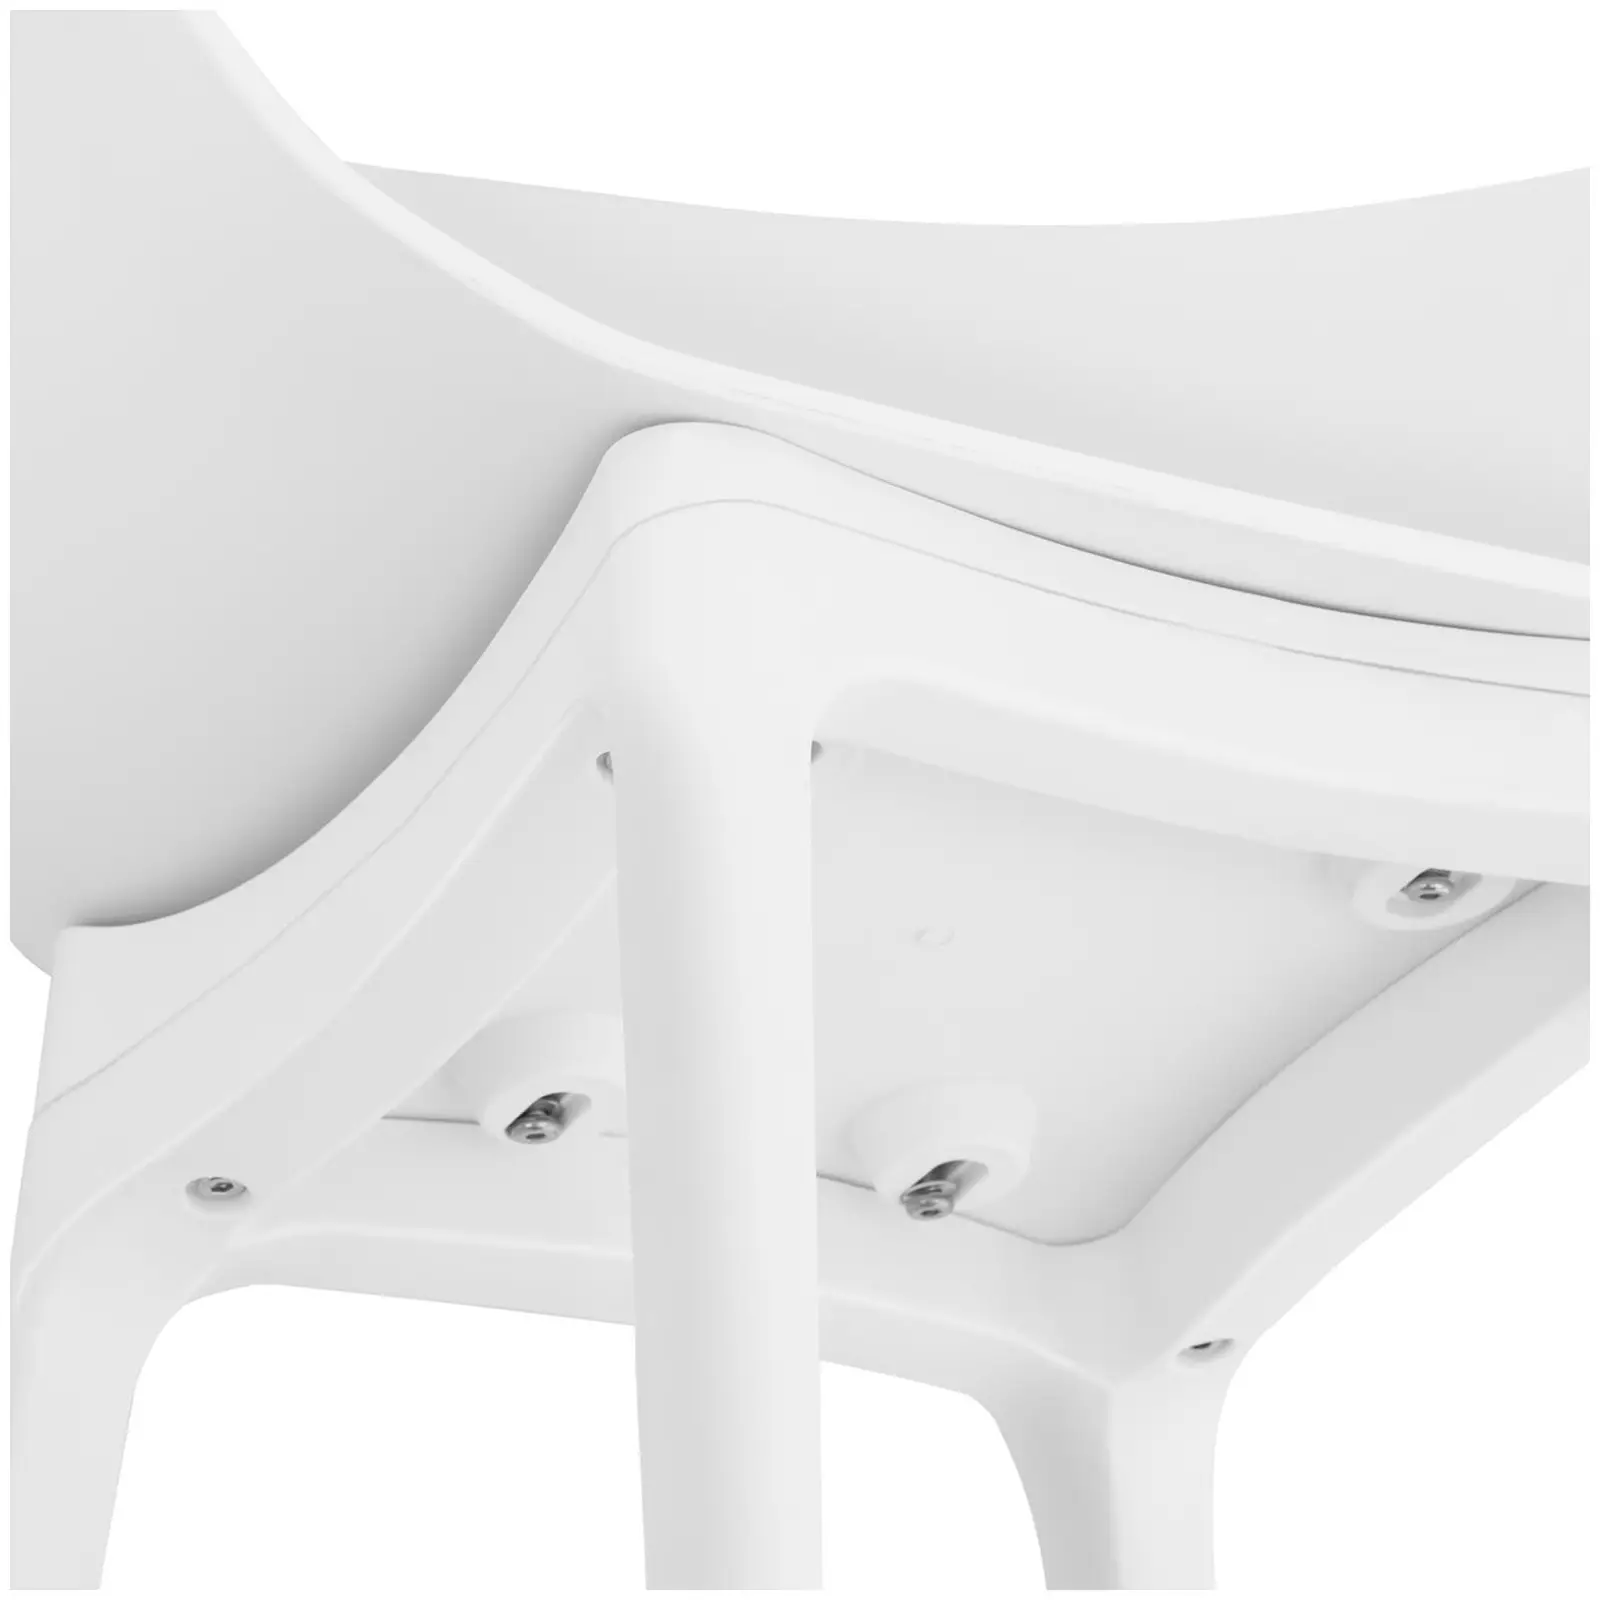 Occasion Chaise - Lot de 2 - 150 kg max. - Surface d'assise de 60 x 44 cm - Coloris blanc